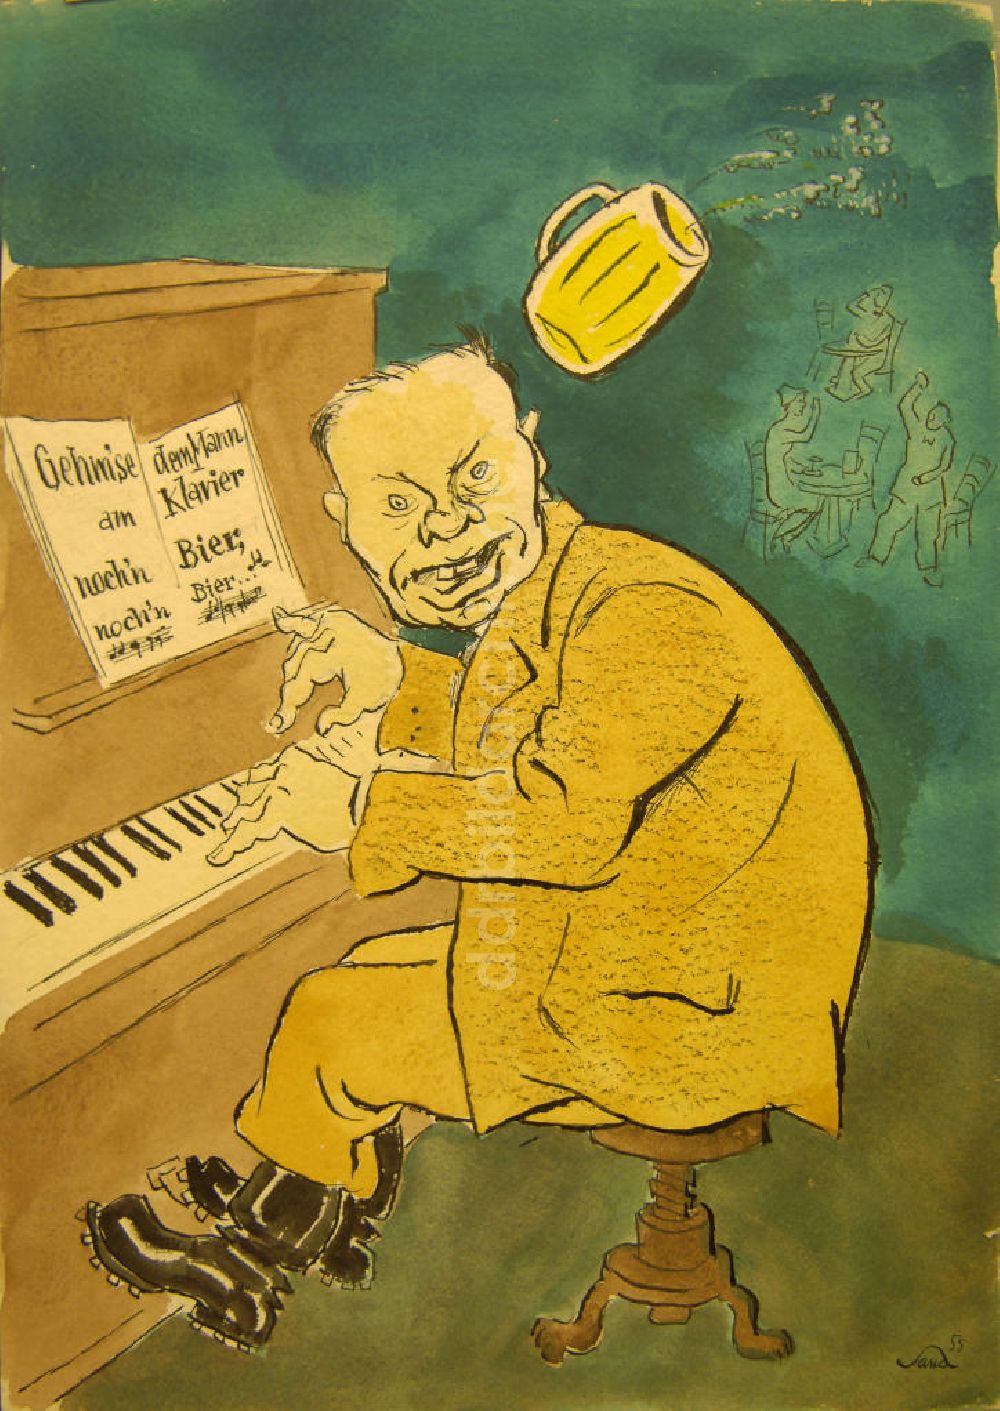 DDR-Bildarchiv: Berlin - Zeichnung von Herbert Sandberg Gehm'se dem Mann am Klavier noch'n Bier, noch'n Bier... aus dem Jahr 1955